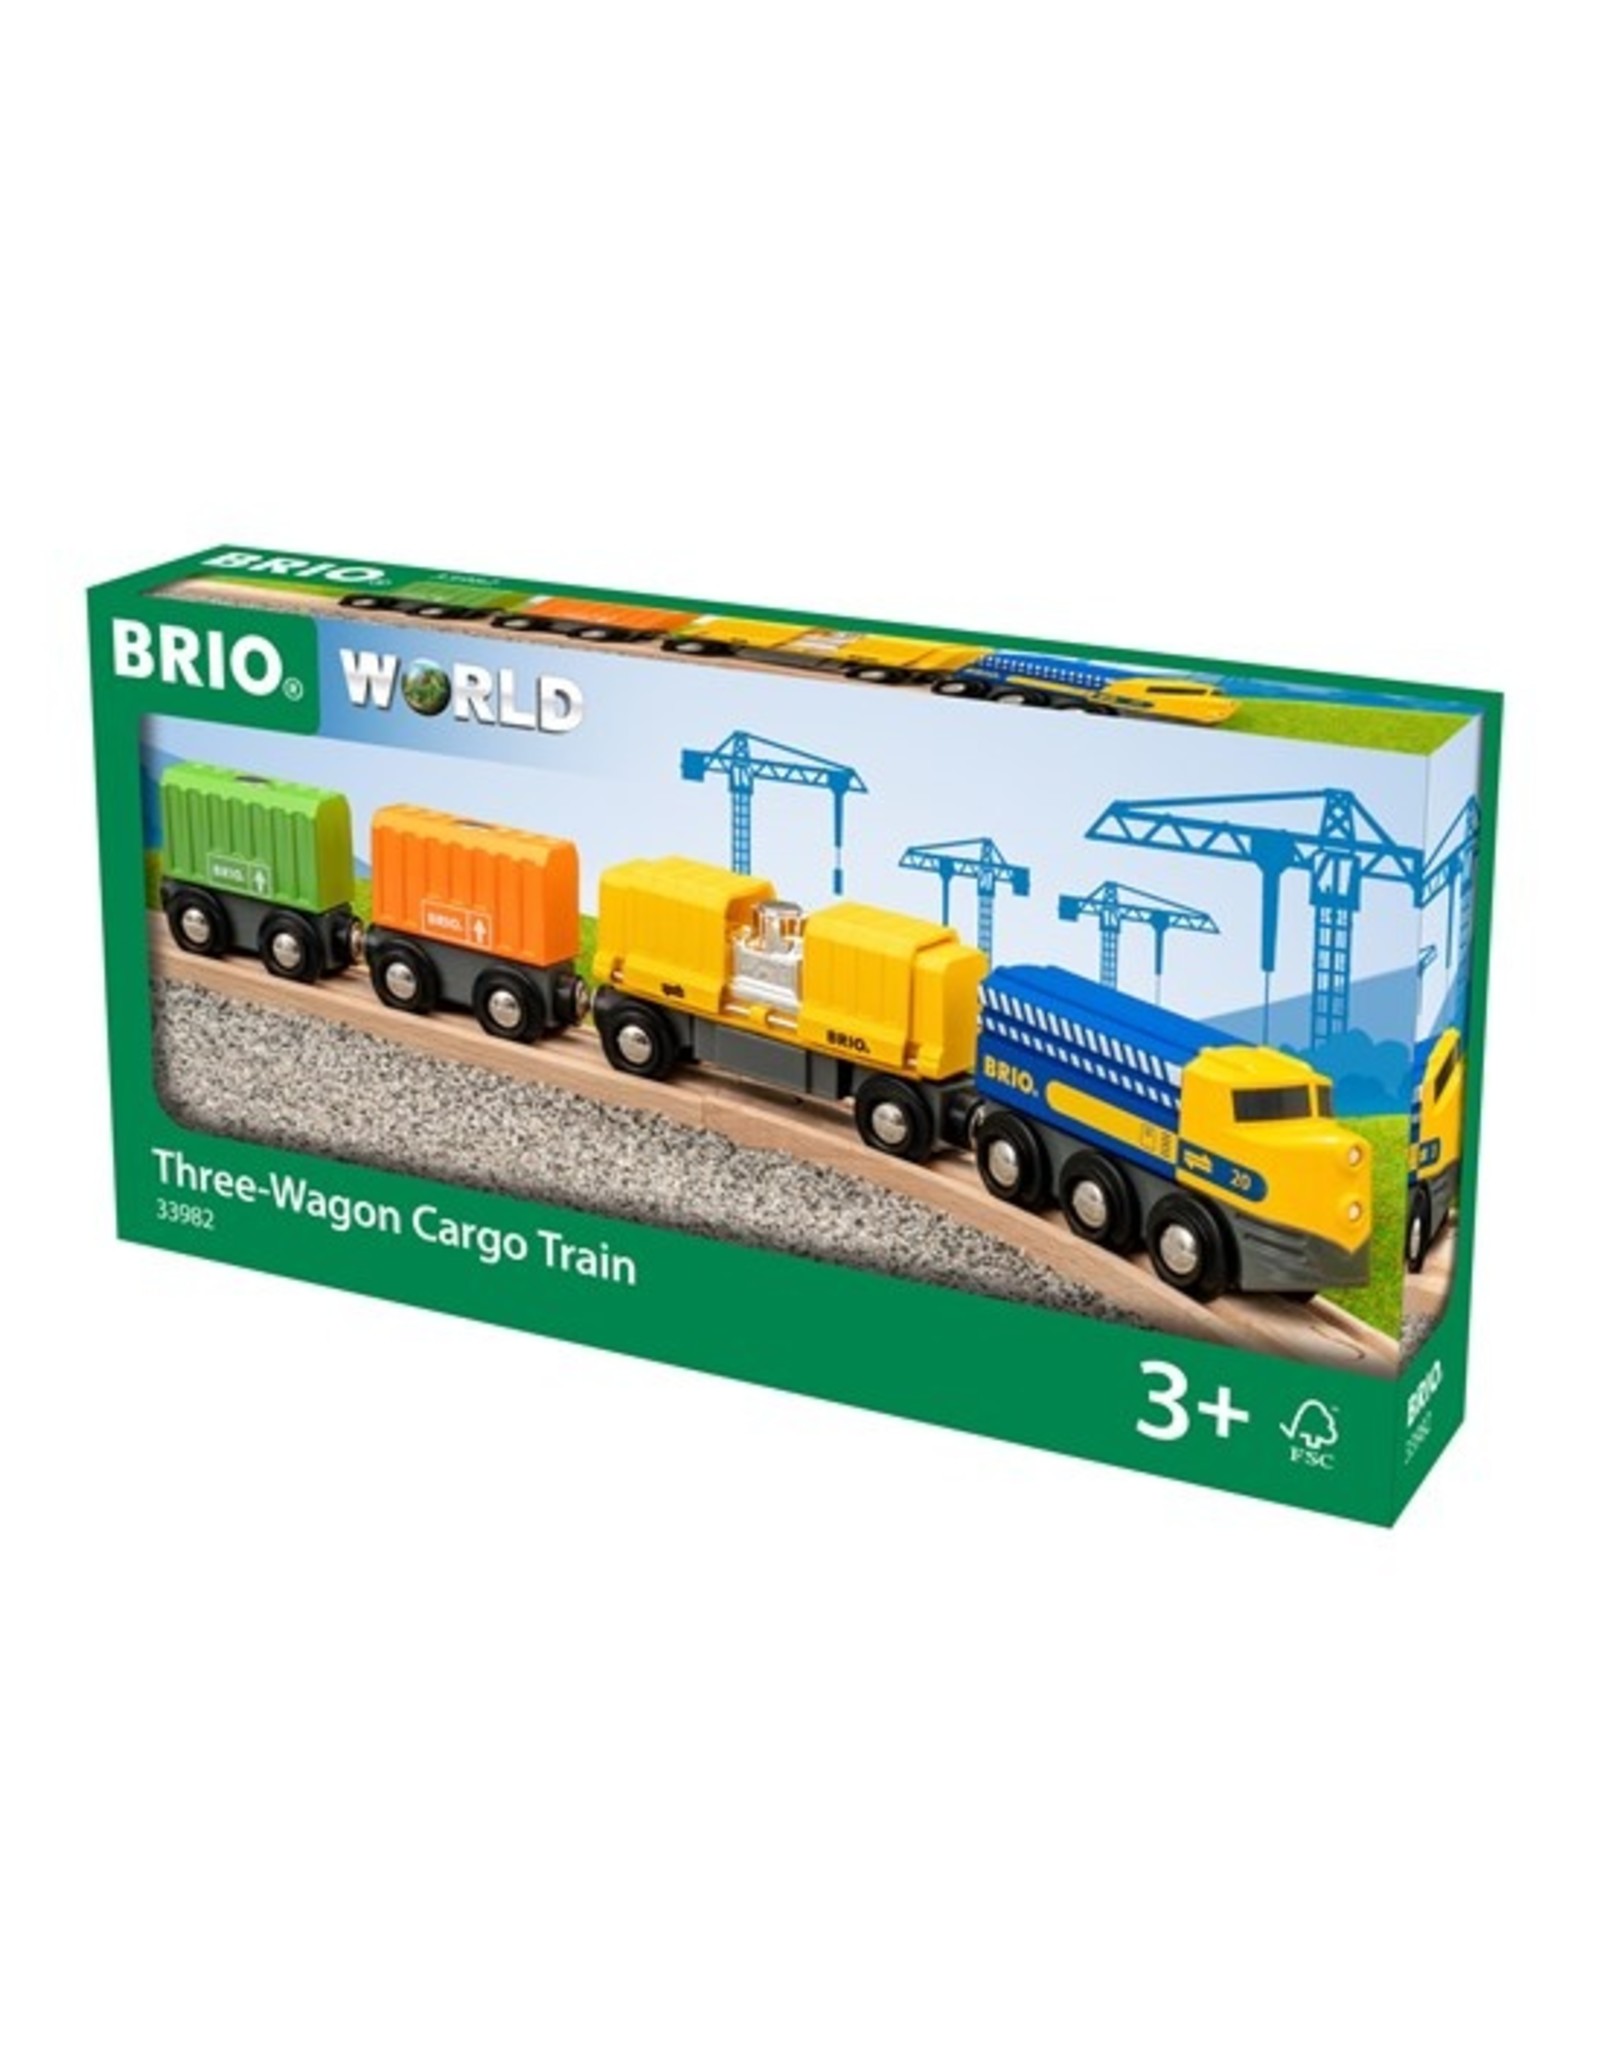 Brio Brio World 33982 Vrachttrein met 3 Wagons - Three -Wagon Cargo Train